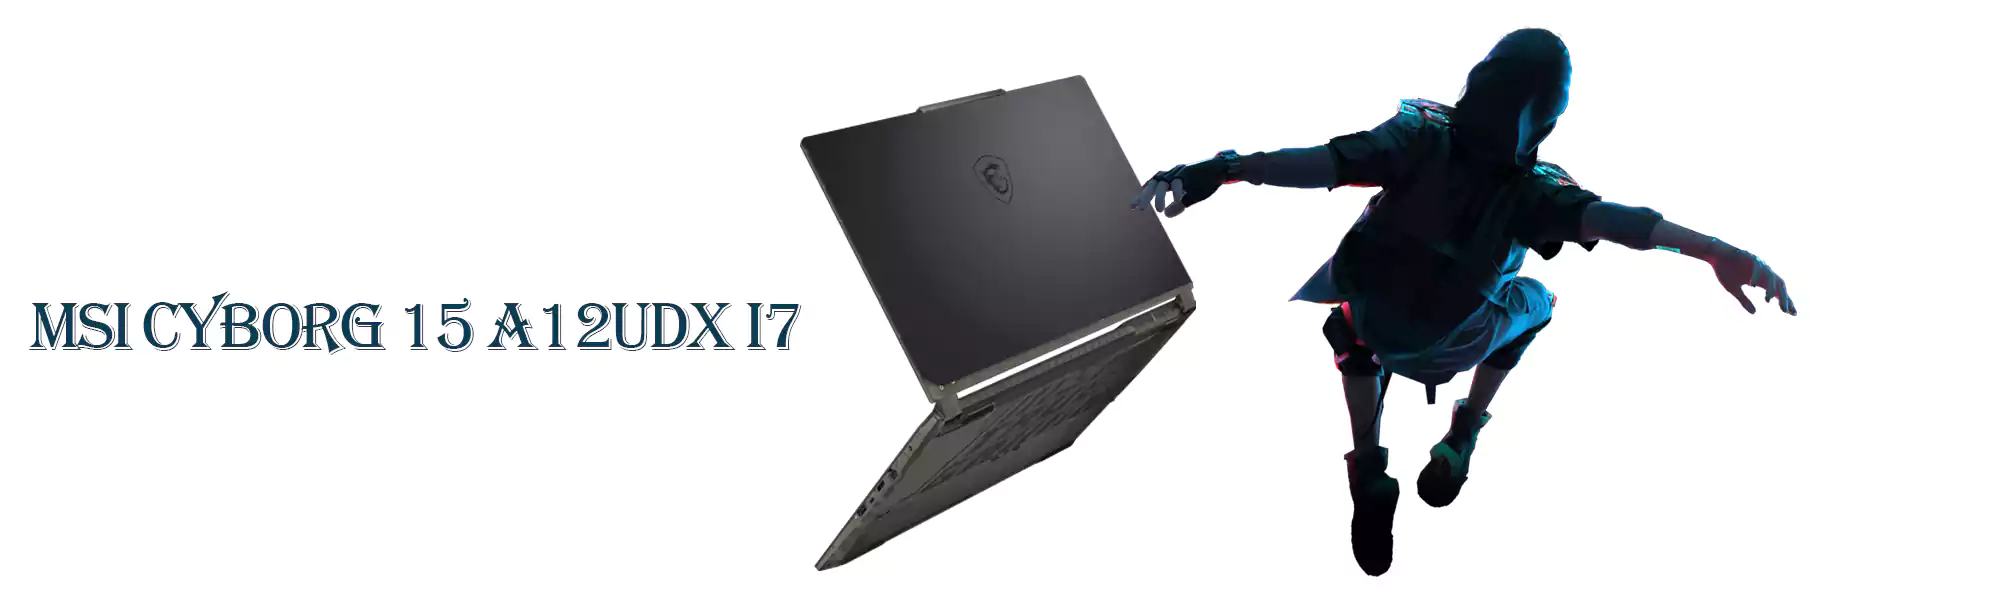 لپ تاپ 15.6 اینچی ام اس ای مدل Cyborg 15 A12UDX i7